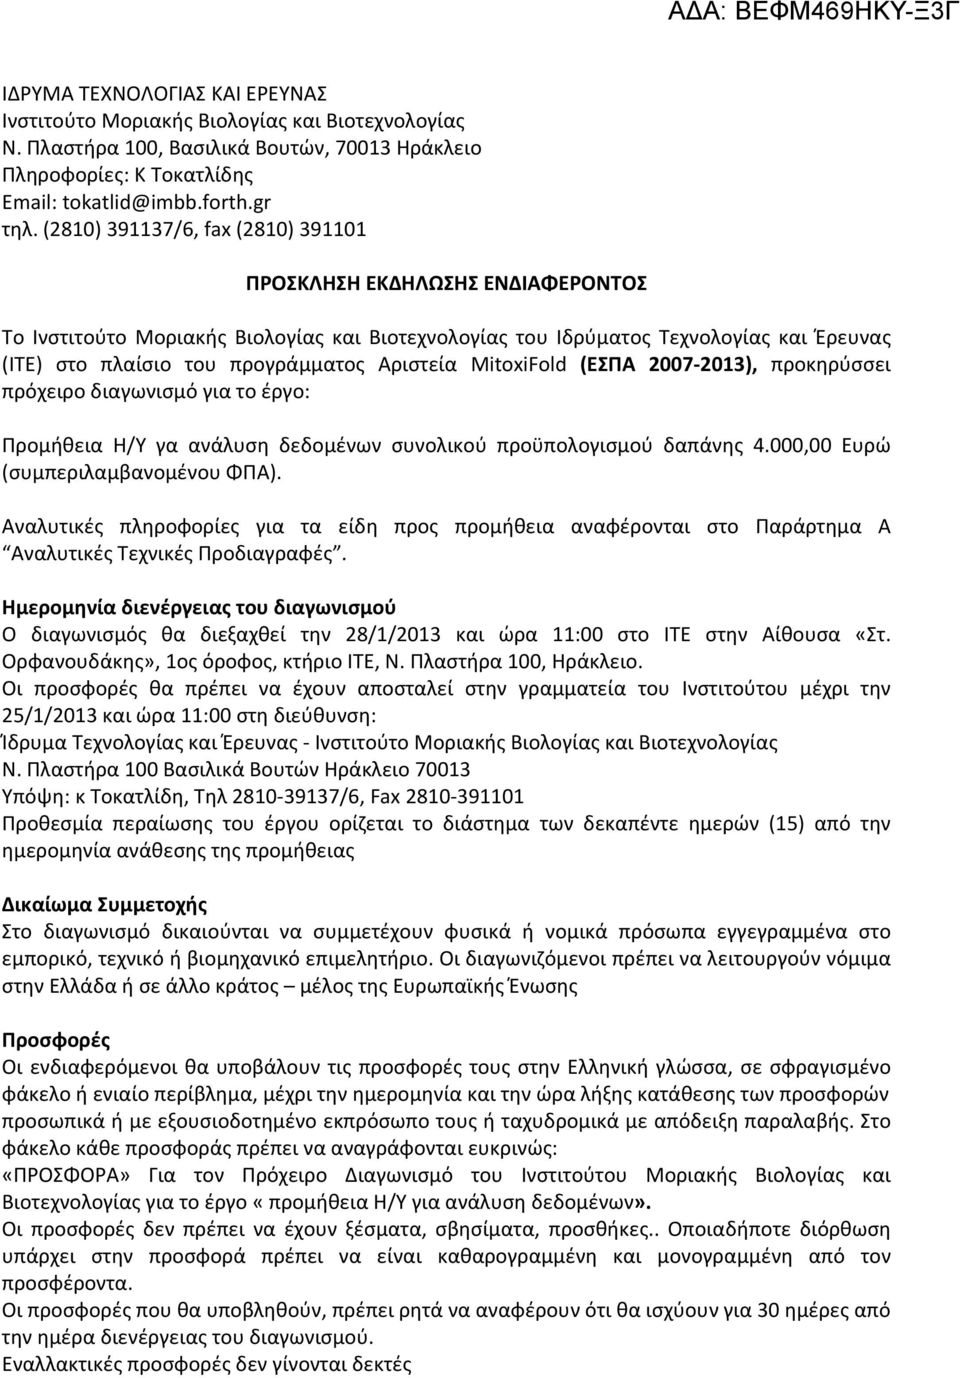 Αριστεία MitoxiFold (ΕΣΠΑ 2007 2013), προκηρύσσει πρόχειρο διαγωνισμό για το έργο: Προμήθεια H/Y γα ανάλυση δεδομένων συνολικού προϋπολογισμού δαπάνης 4.000,00 Ευρώ (συμπεριλαμβανομένου ΦΠΑ).